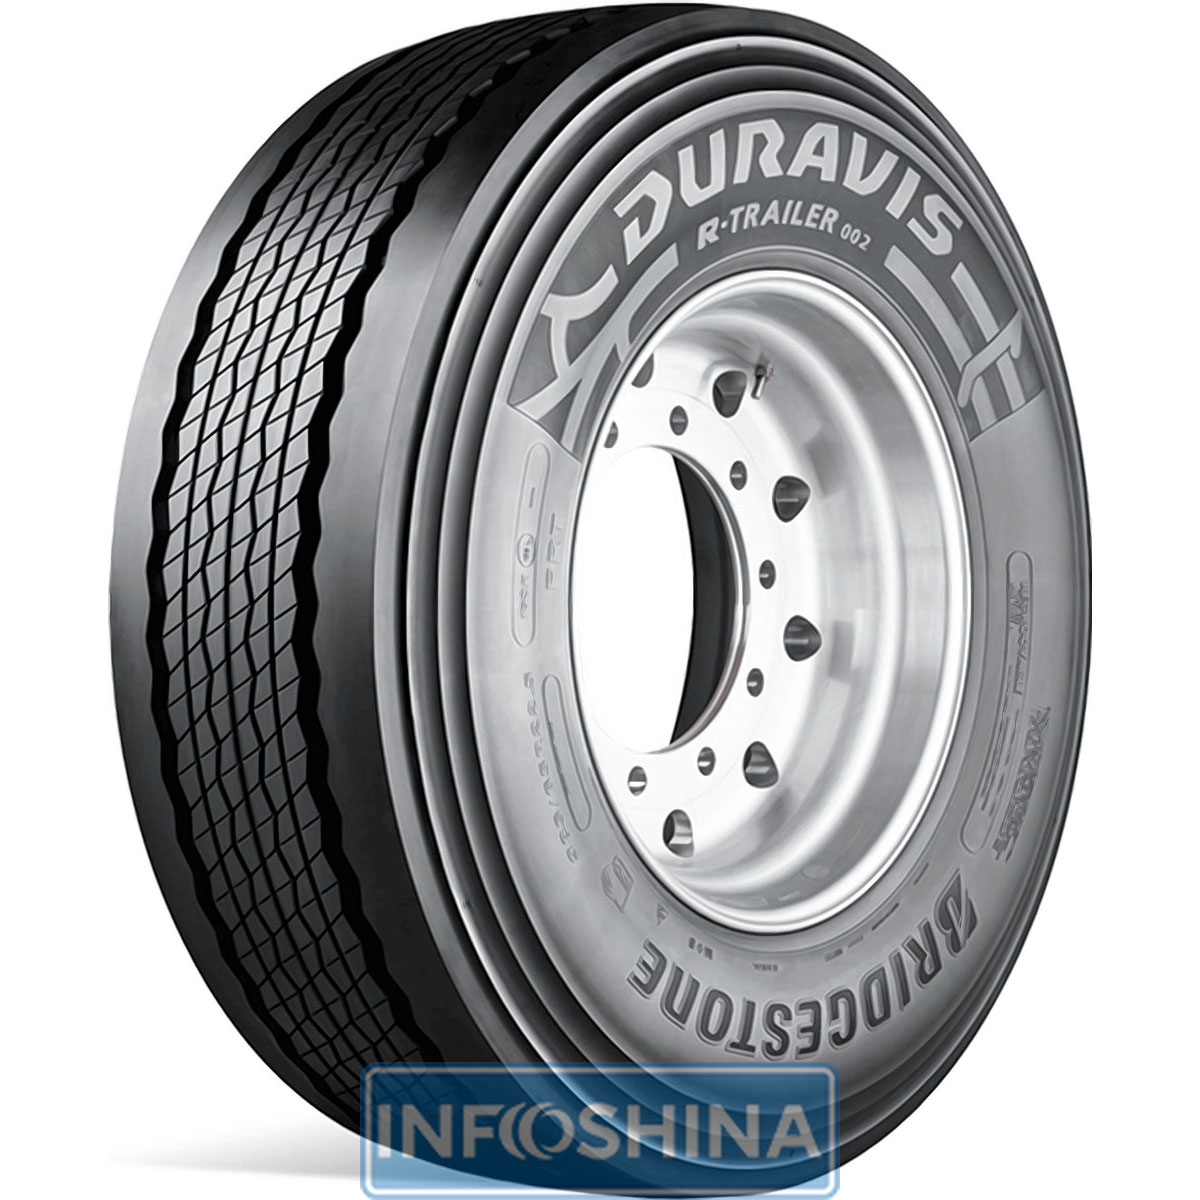 Купить шины Bridgestone Duravis R-Trailer 002 (прицепная ось)